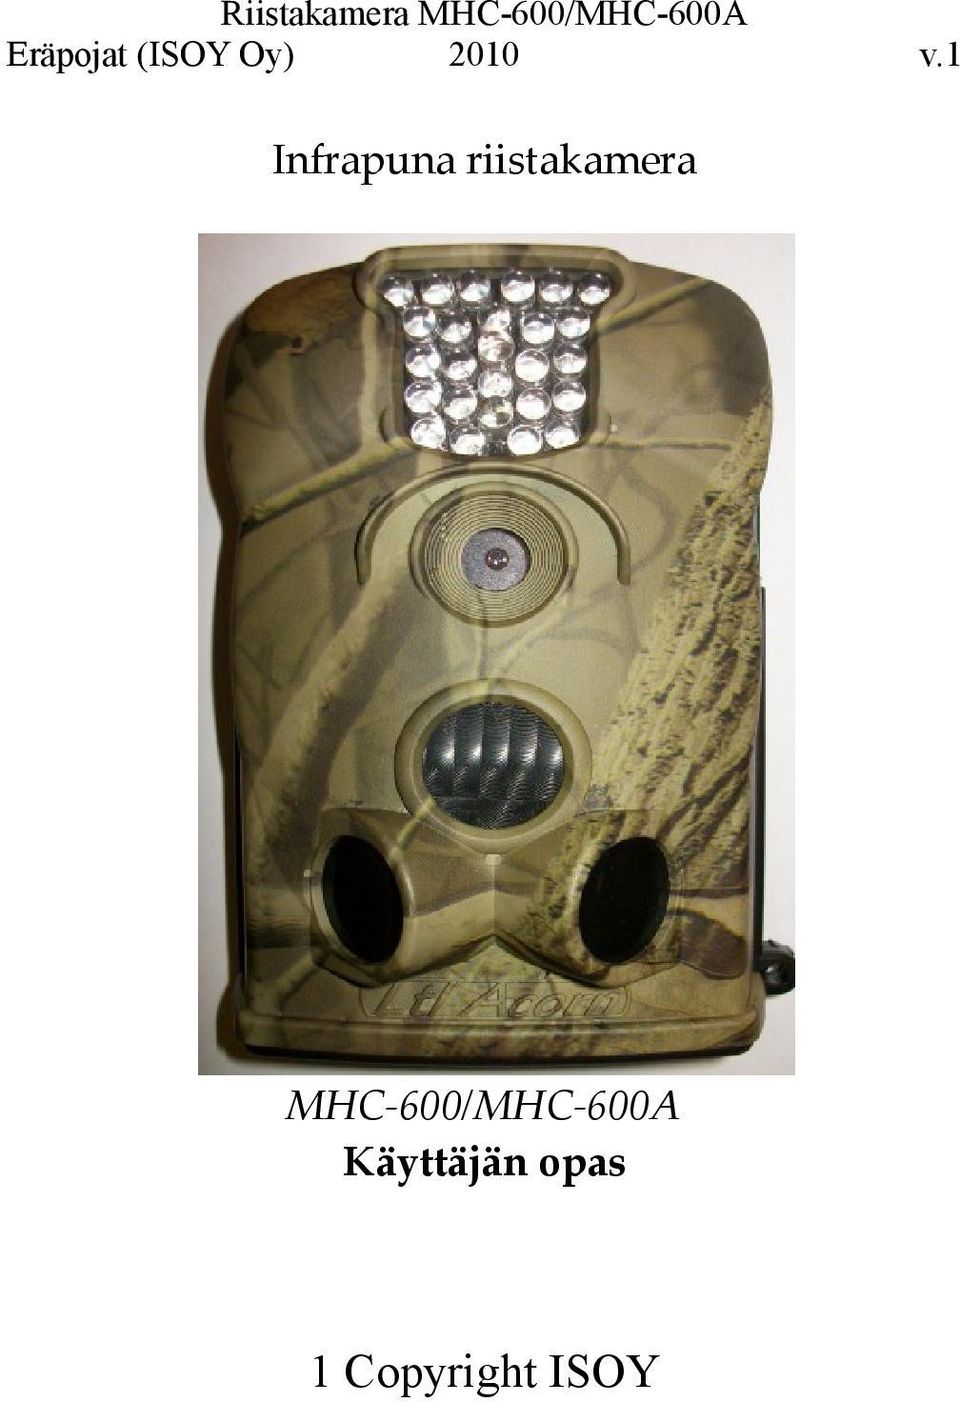 MHC-600/MHC-600A